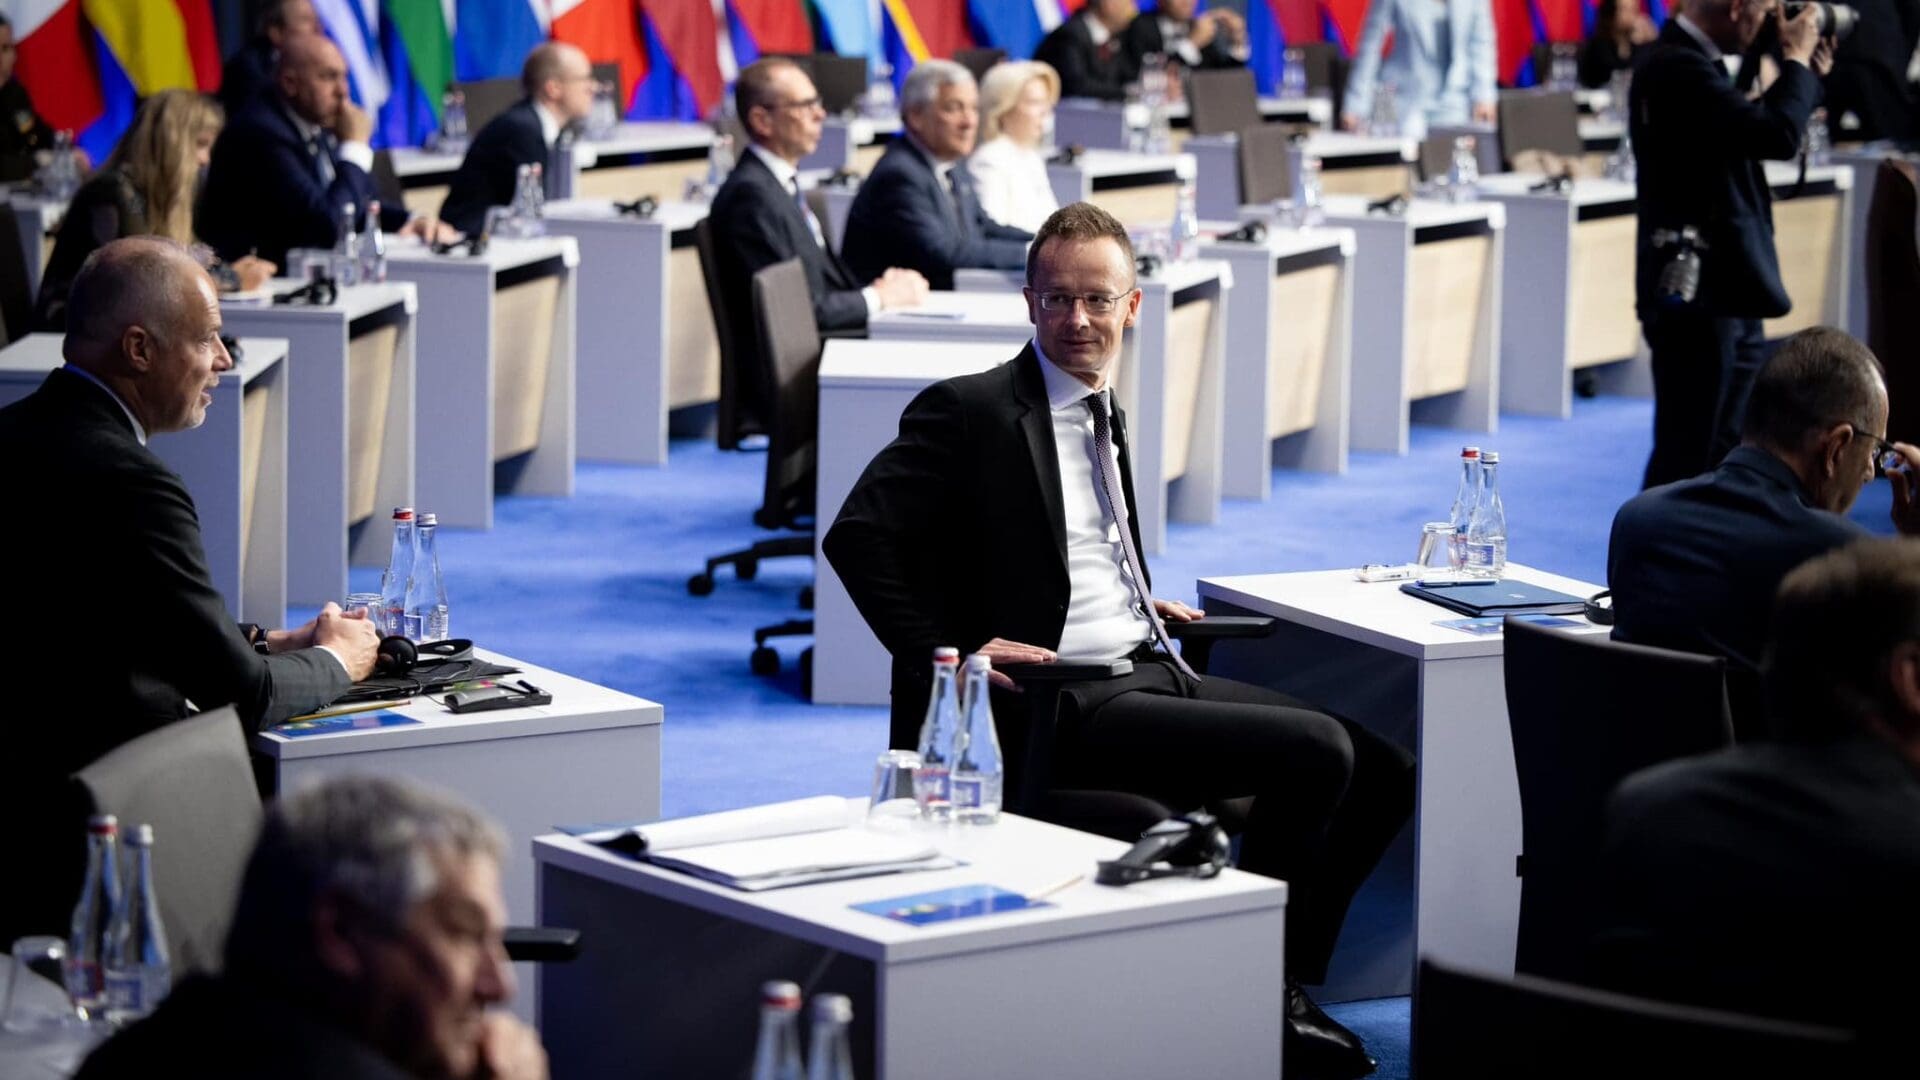 Péter Szijjártó turns back on his seat to exchange a glance with Defence Minister Kristóf Szalay-Bobrovniczky.